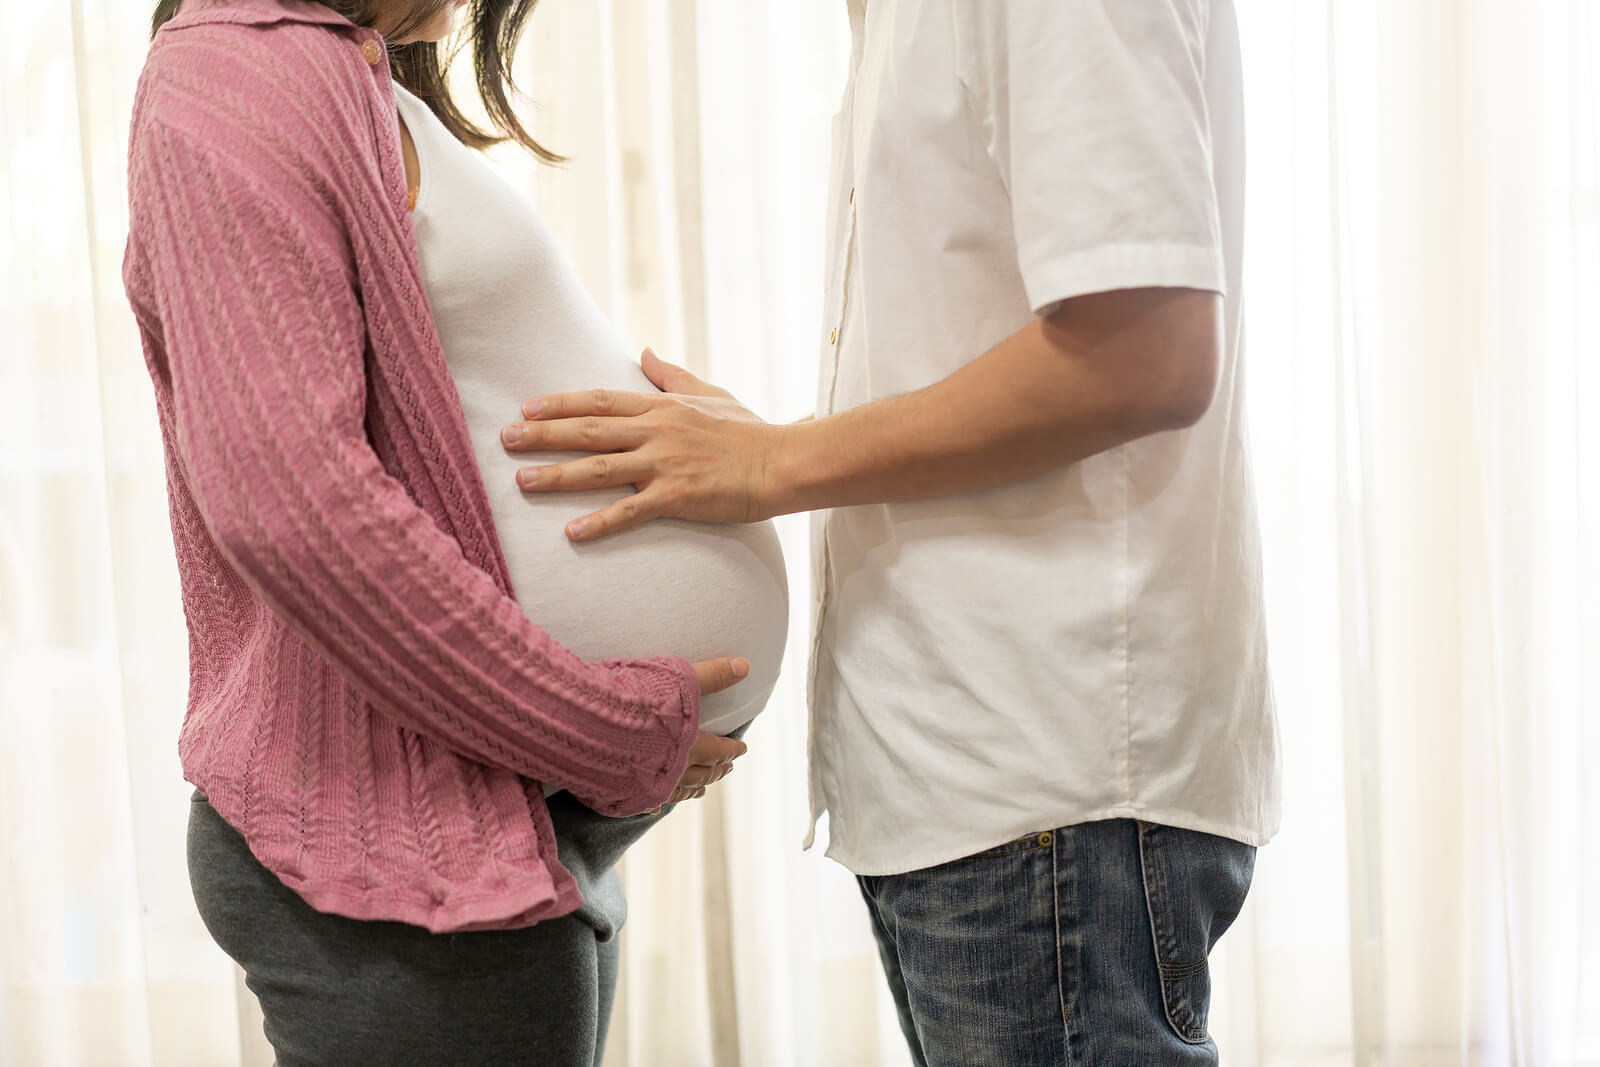 Une femme enceinte et son conjoint qui touche son ventre.